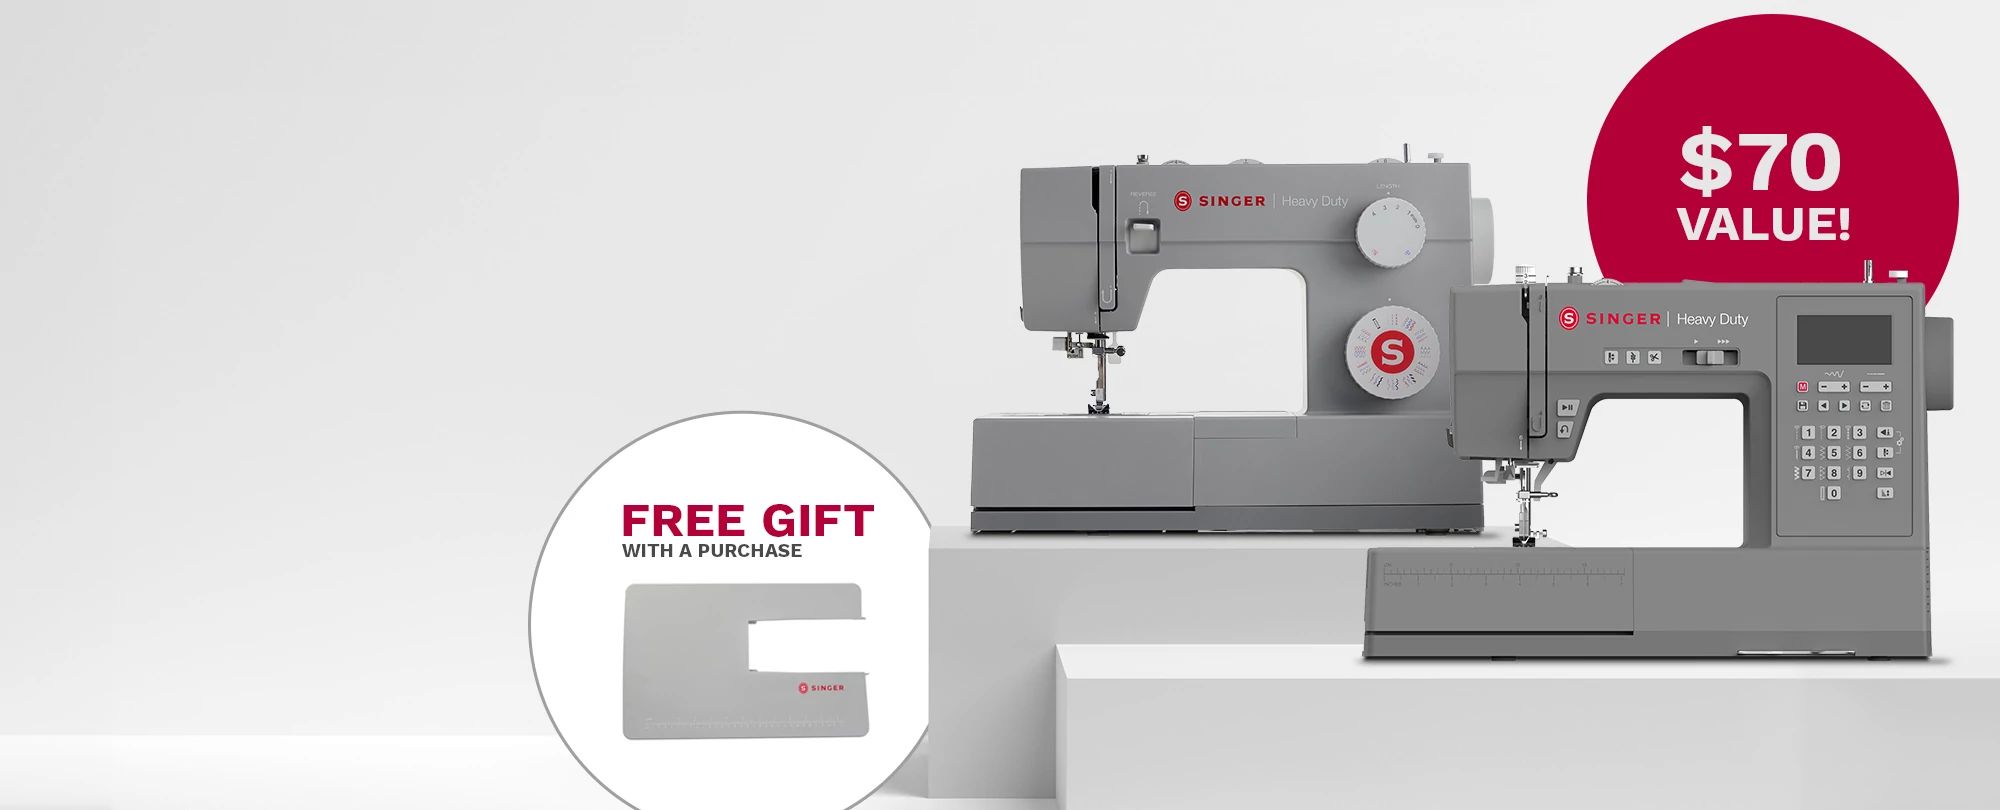 Singer M2605 Sewing Machine + FREE Gift Bundle